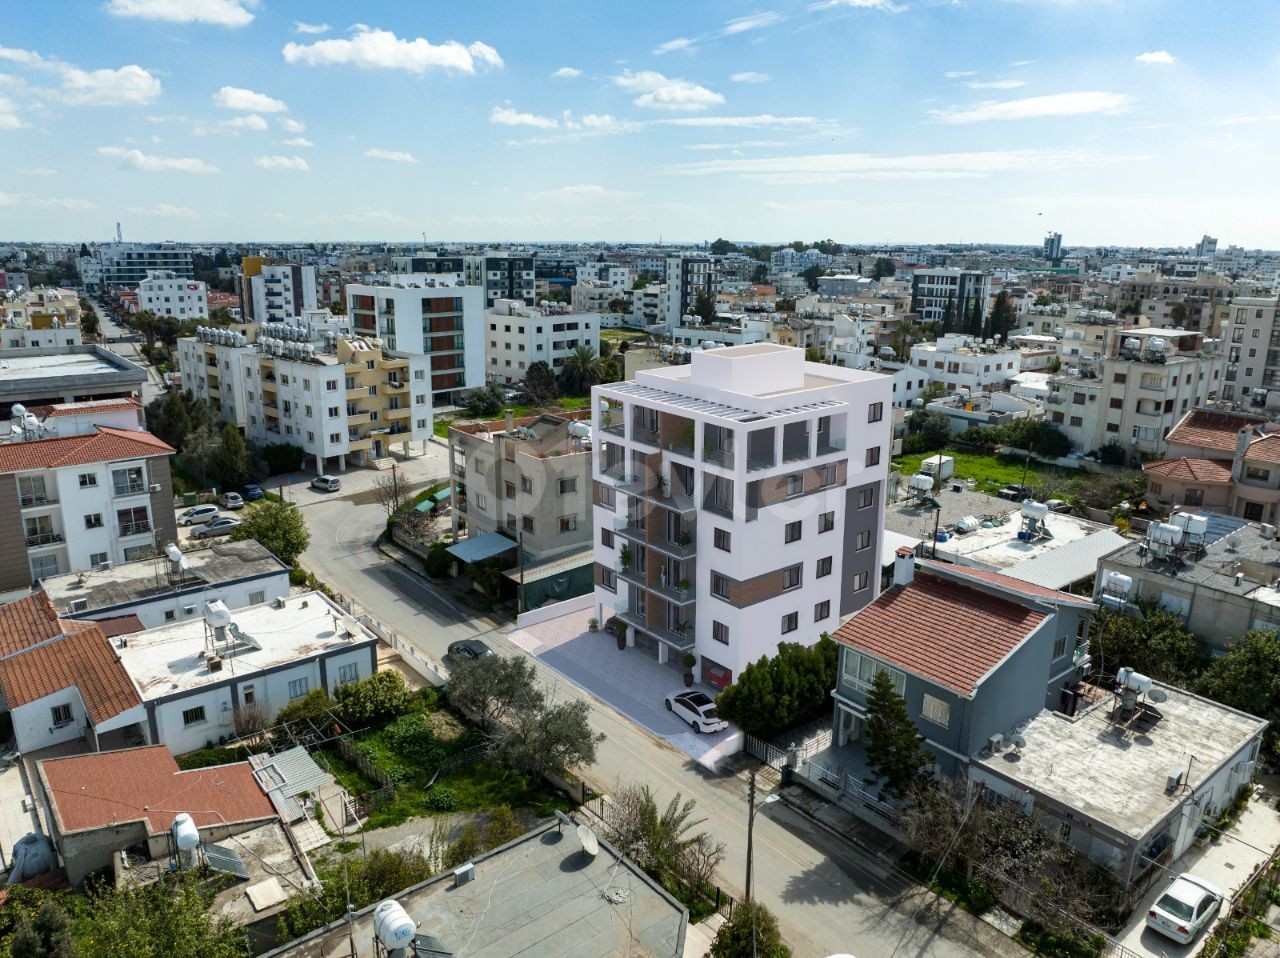 Die bevorzugte Gegend von Nikosia ist K.Kaymakli da zero, 75 m2, 2 + 1 Wohnung ab 50,000 stg ** 